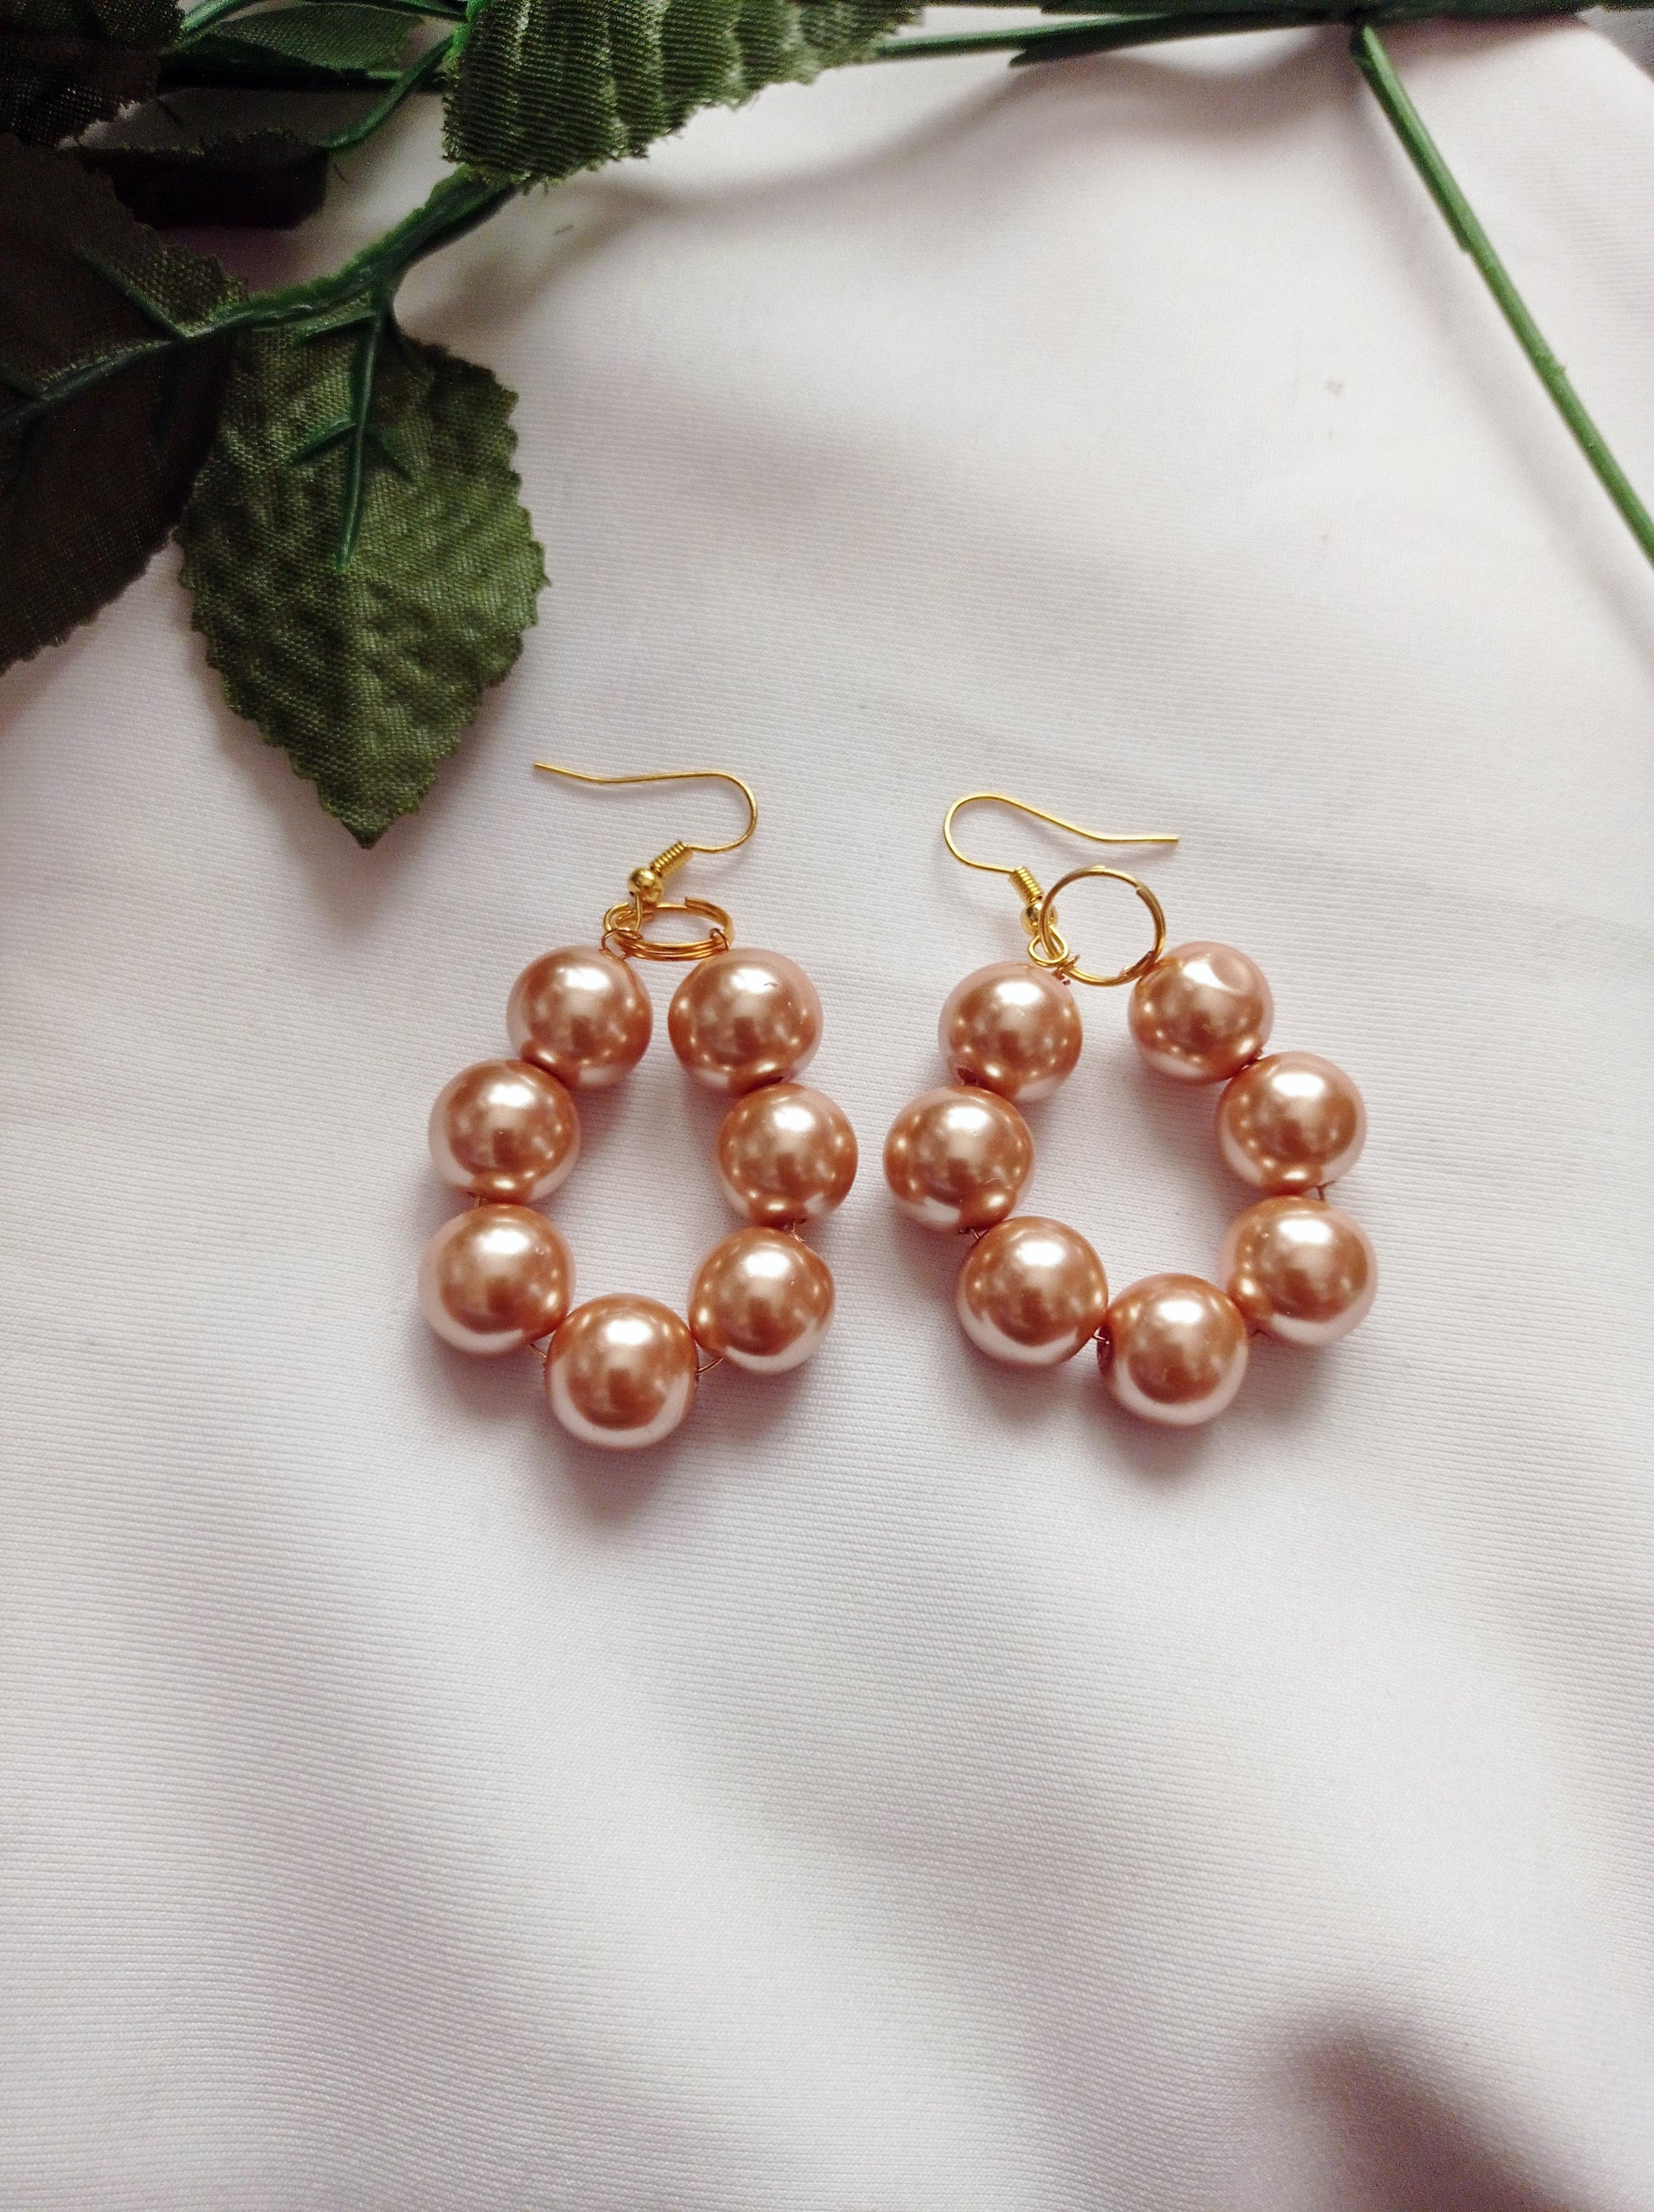 Bronze Glass Pearl Earrings, Glass Pearl Jewelry, Unique Earrings | by lovedbynlanla-7